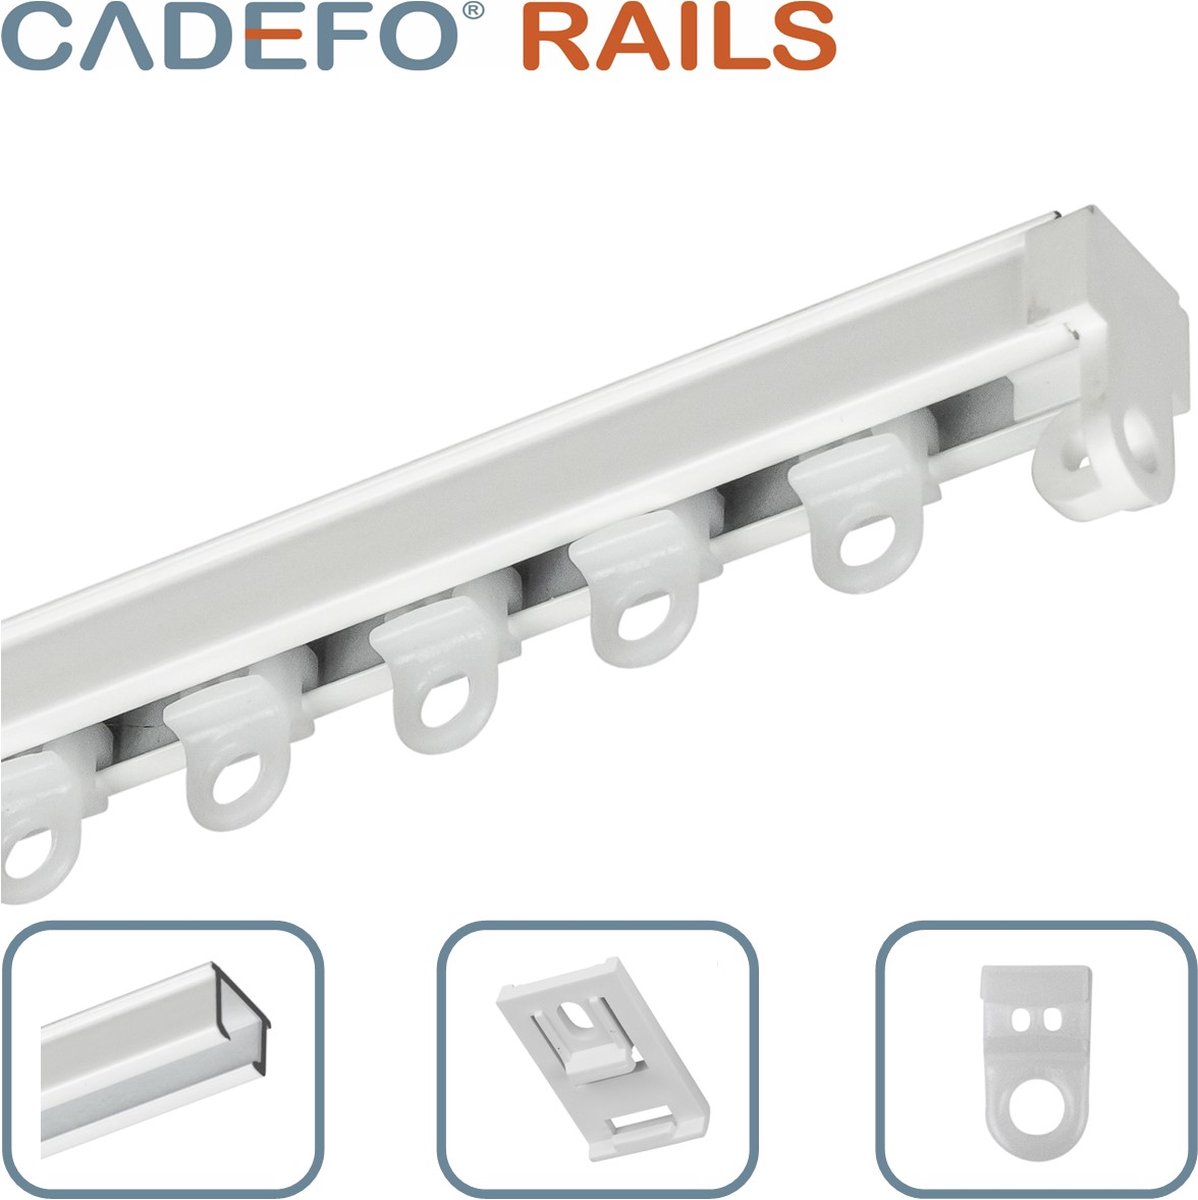 CADEFO RAILS (351 - 400 cm) Gordijnrails - Compleet op maat! - UIT 1 STUK - Leverbaar tot 6 meter - Plafondbevestiging - Lengte 354 cm